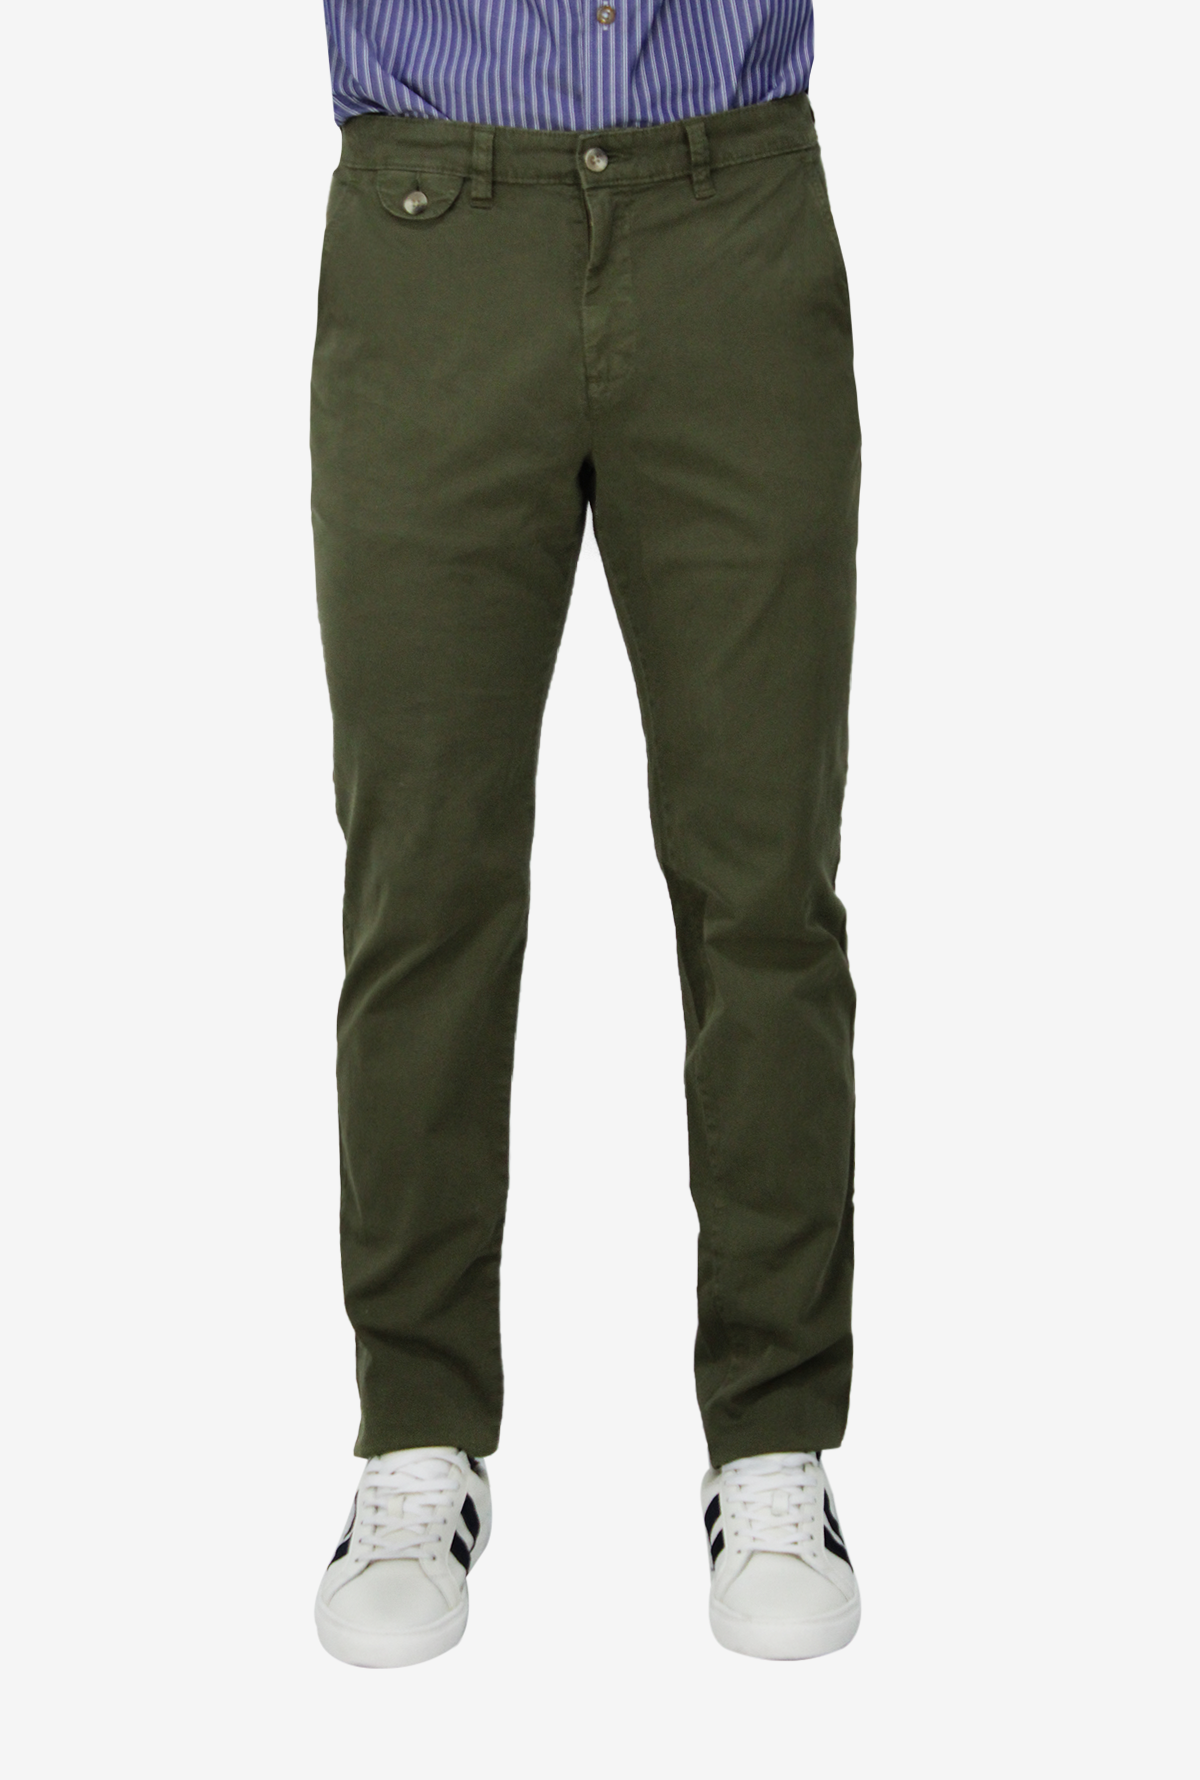 Pantalon Kinetix Jogger Simple Verde Militar